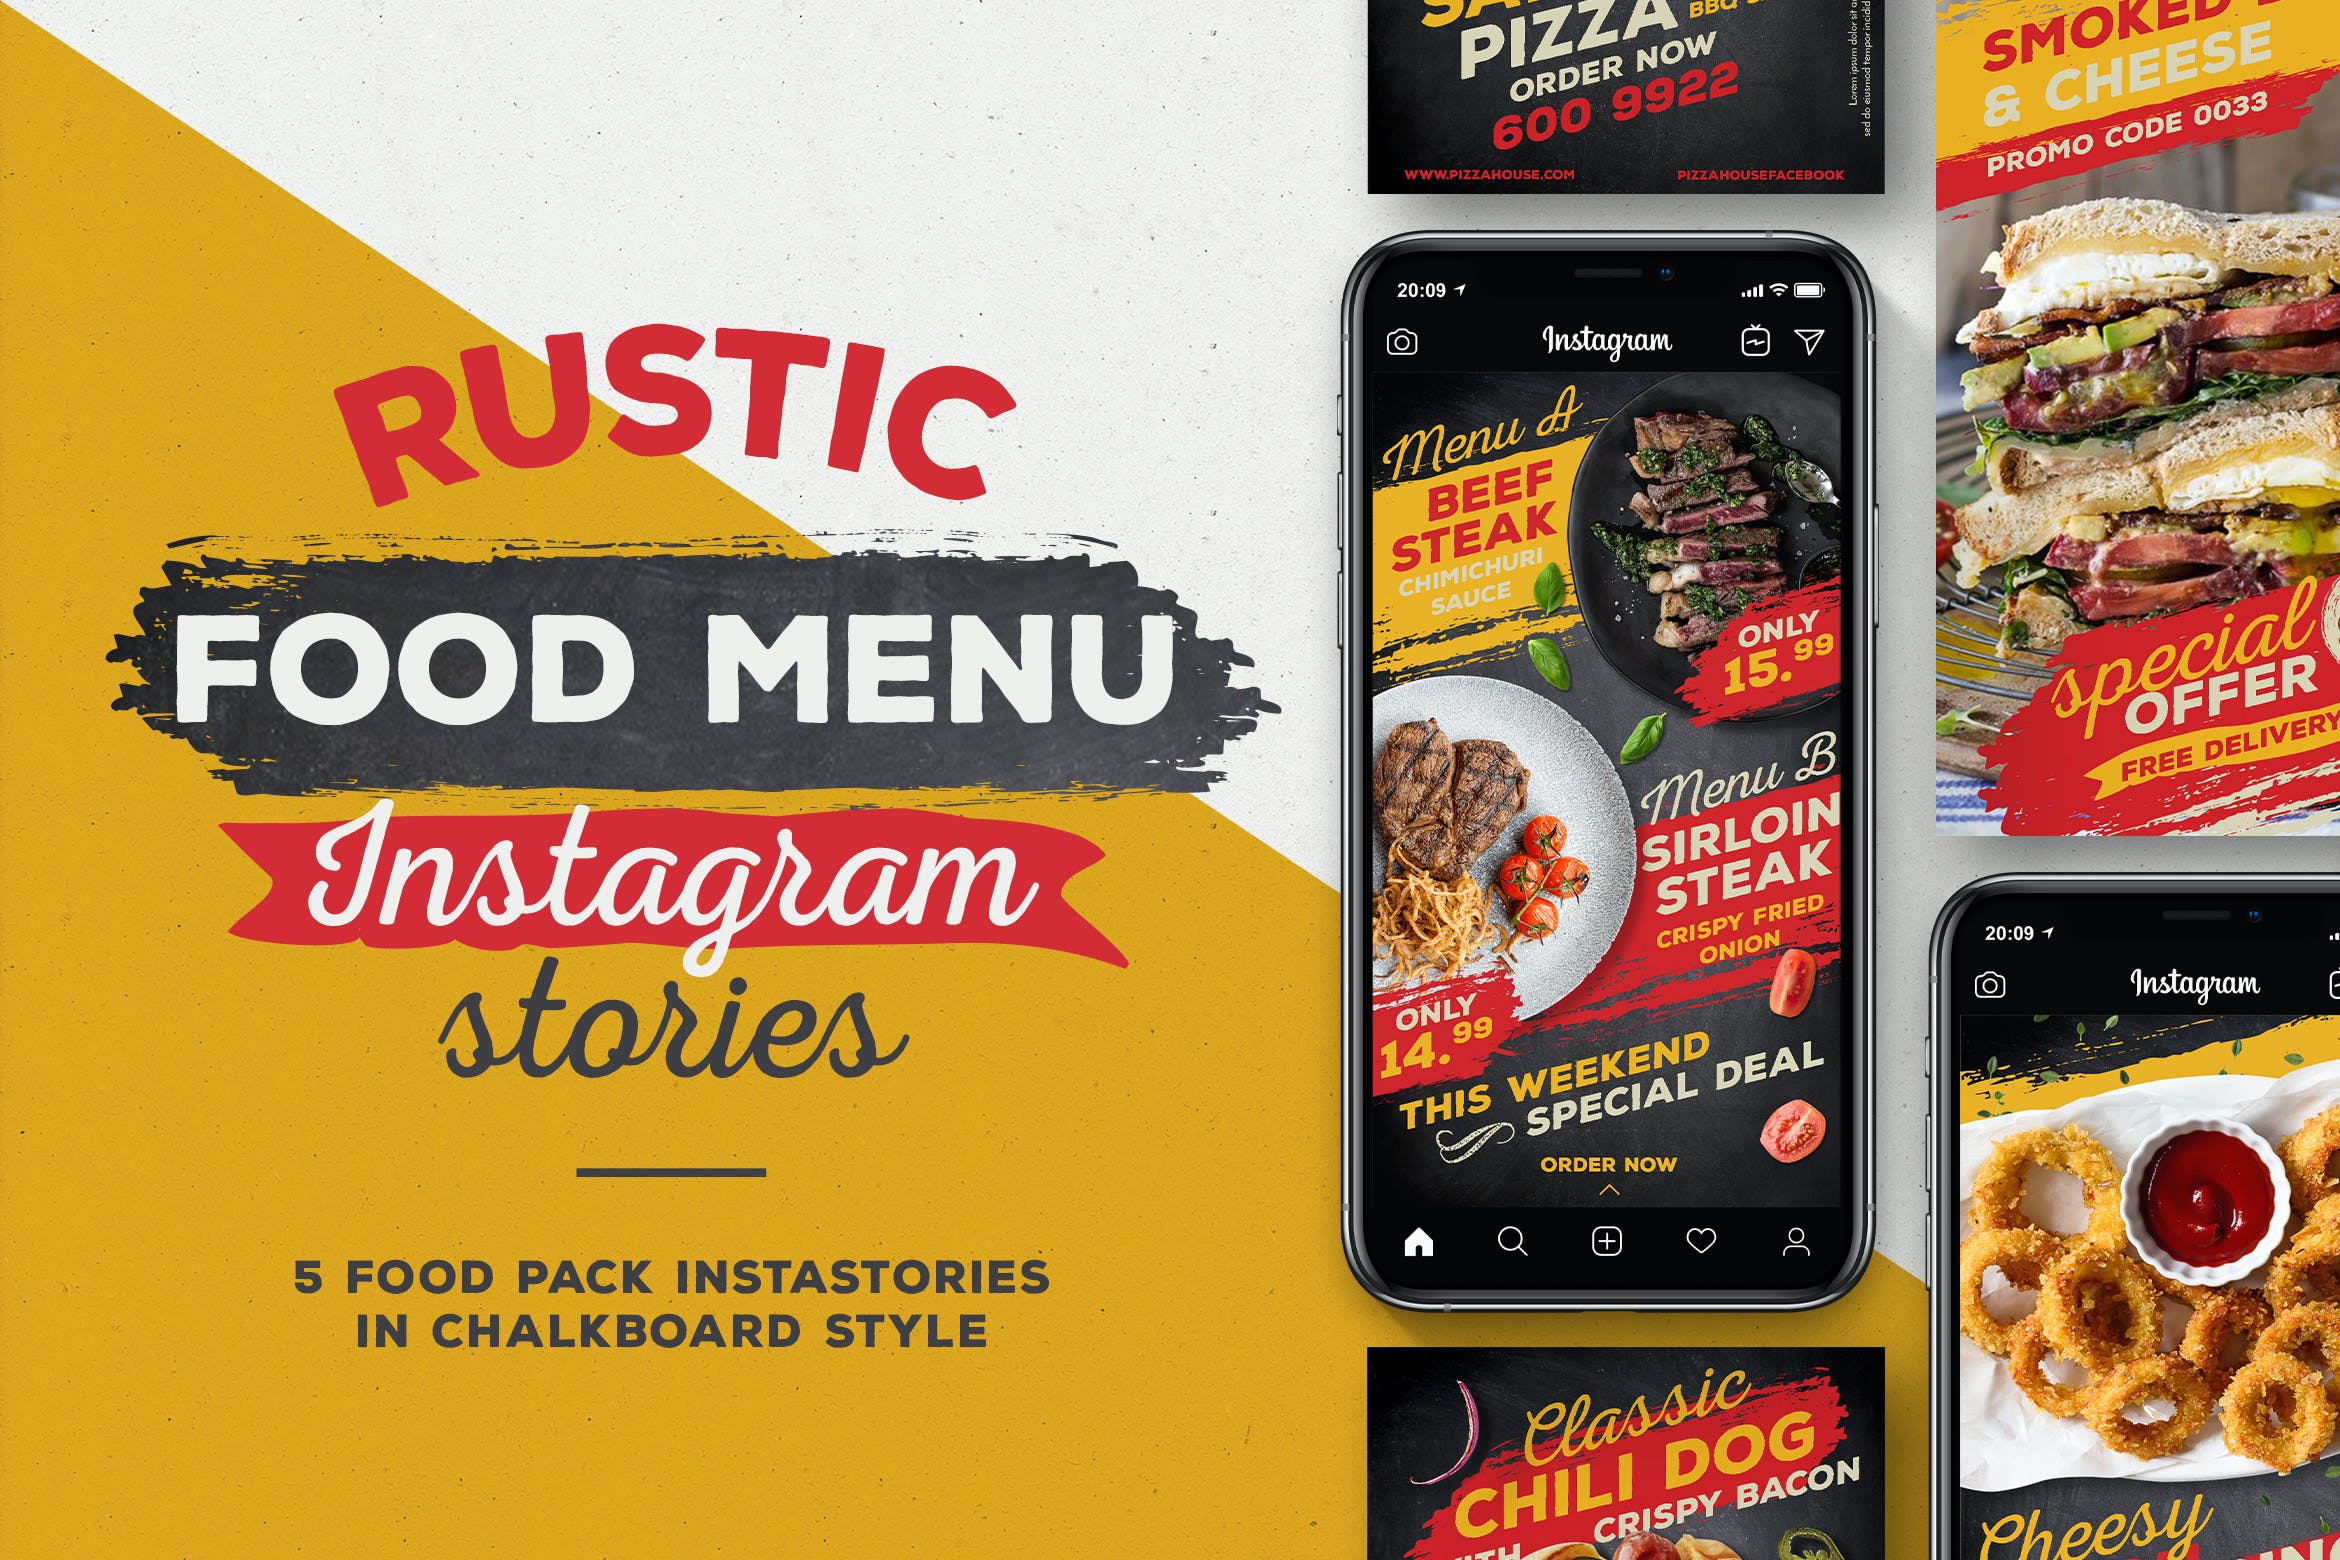 西式快餐美食食品菜单Instagram故事社交素材 Rustic Food Menu Instagram Stories设计素材模板